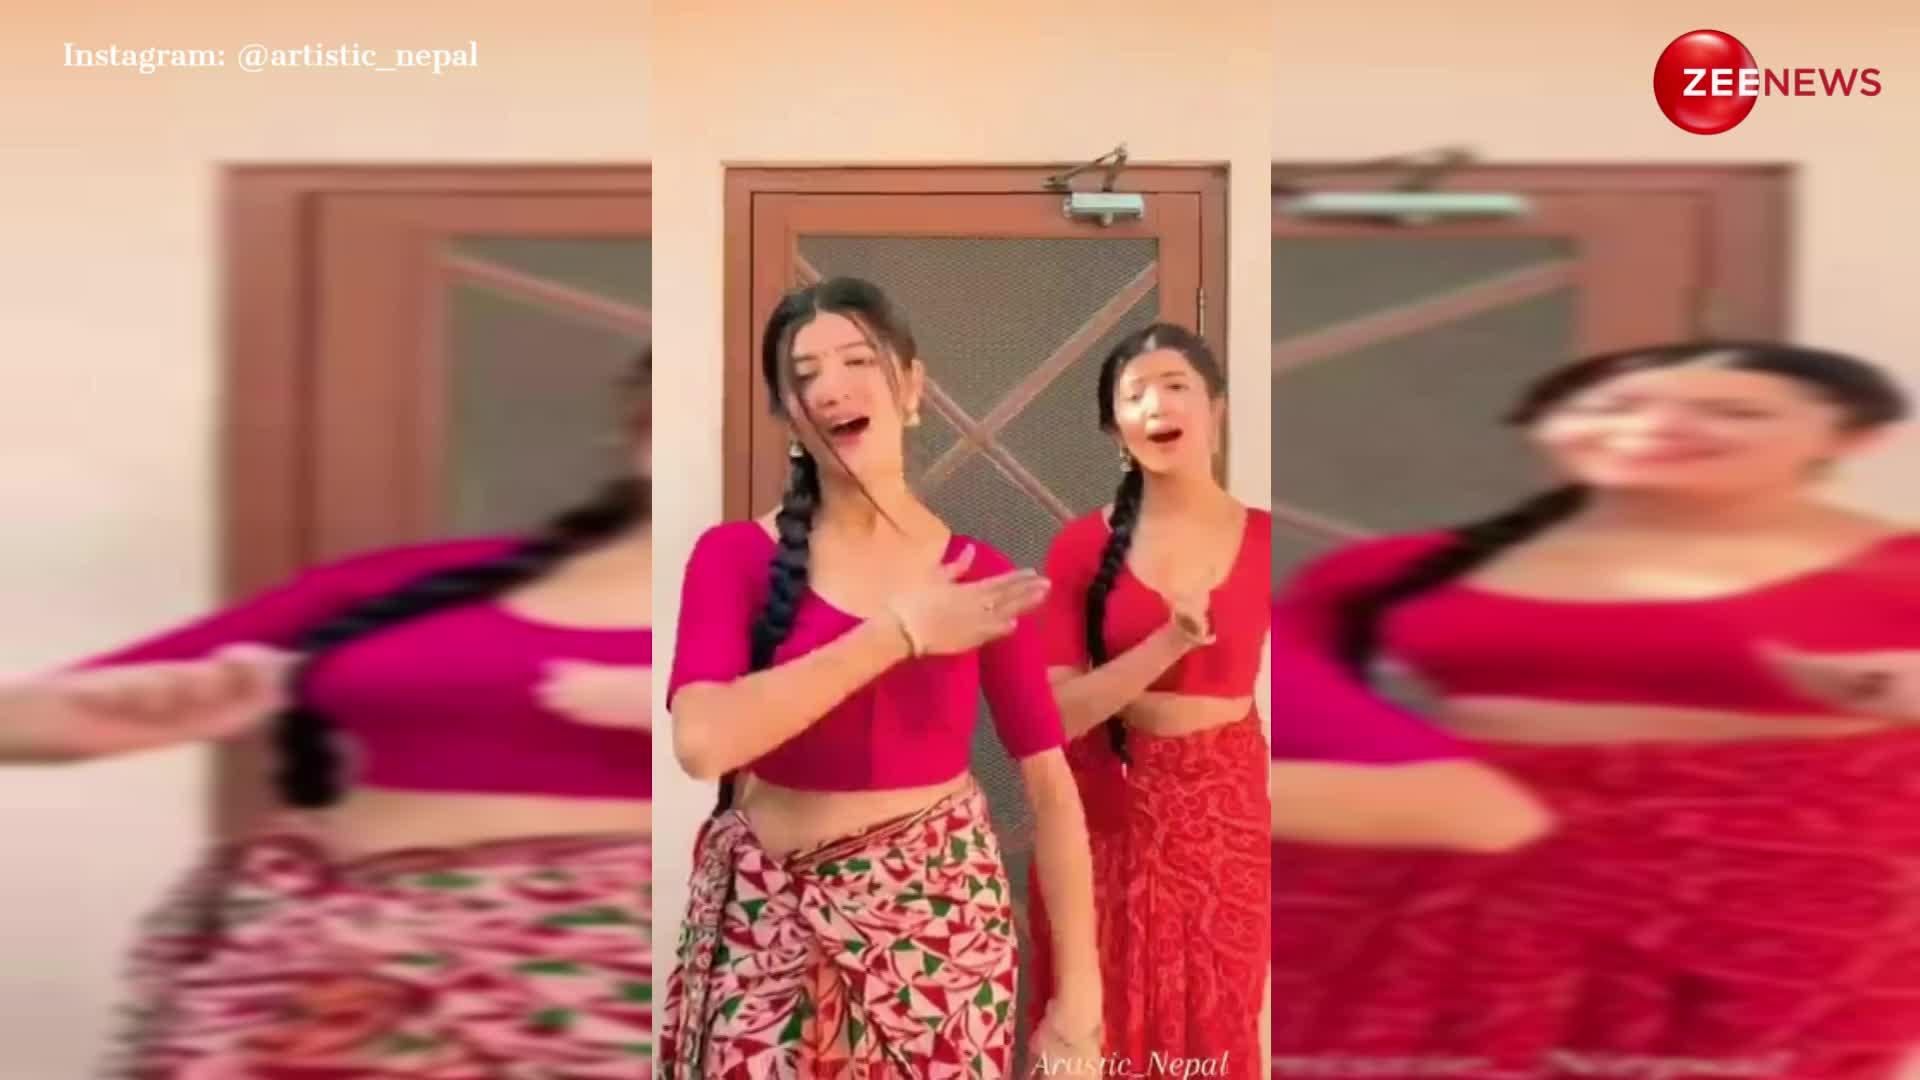 ट्विन नेपाली बहनों का डांस वीडियो हुआ वायरल, हद से ज्यादा खूबसूरत अंदाज में नेपाली गाने 'माया म्हारो' पर बनाई रील; देख दिल हार जाएंगे